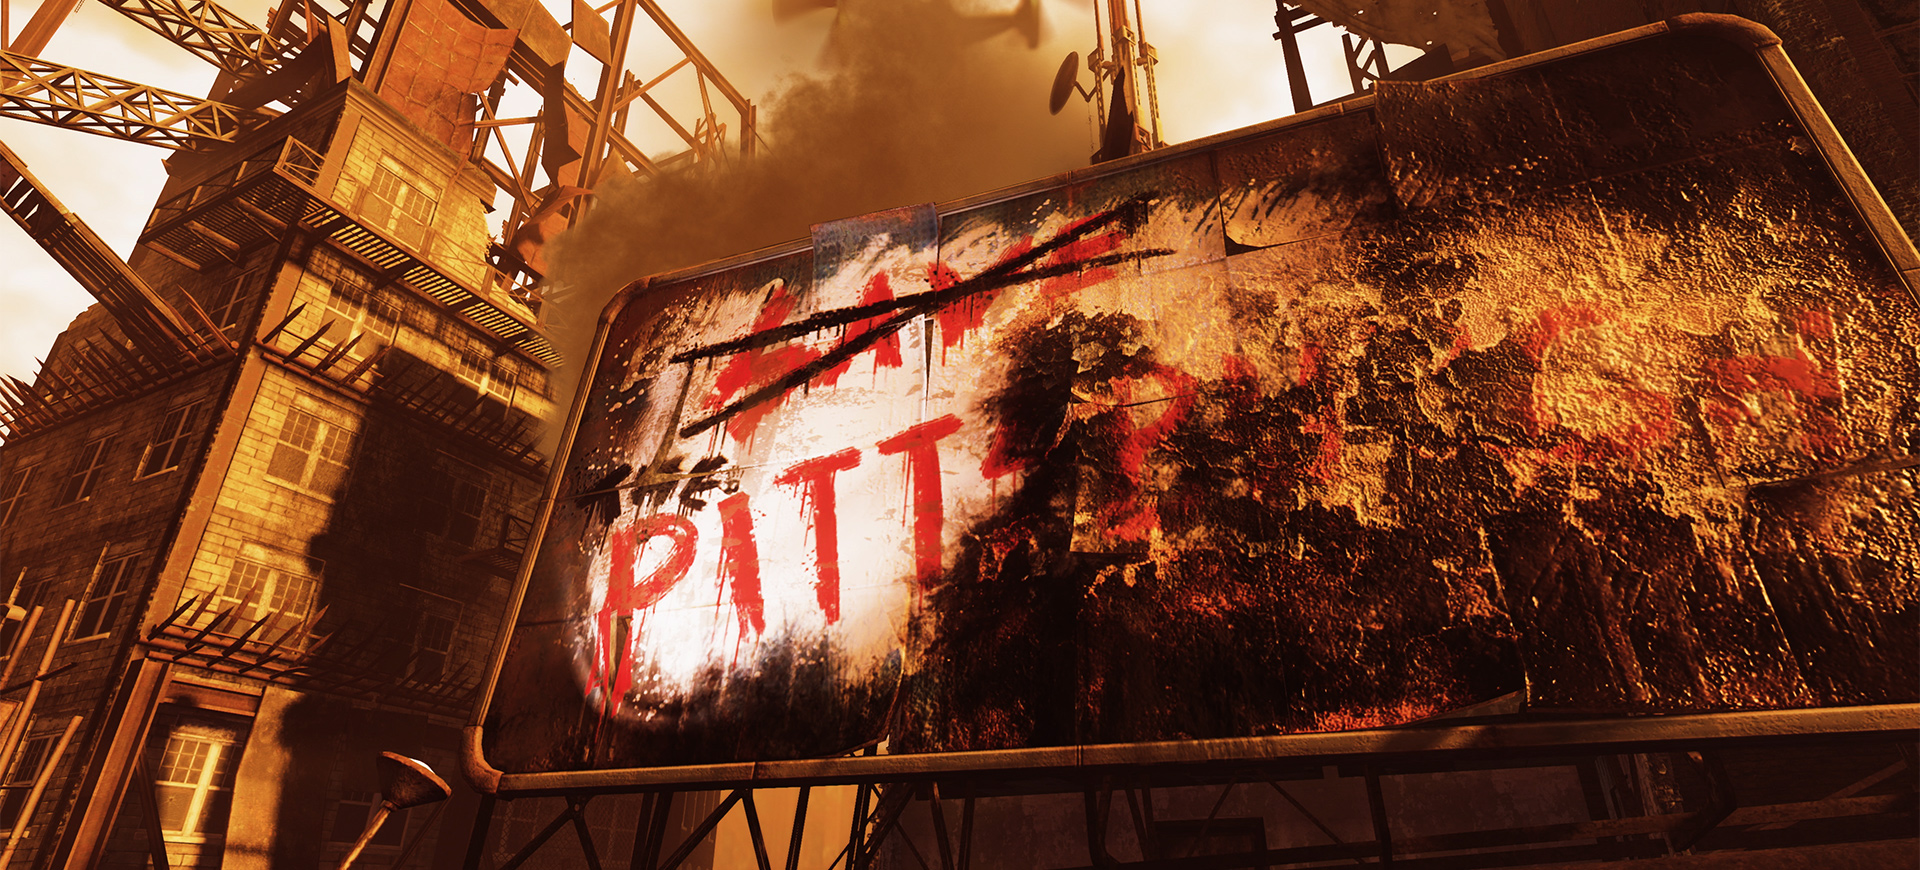 Fallout 76 heeft officieel zijn nieuwe The Pitt DLC aangekondigd.